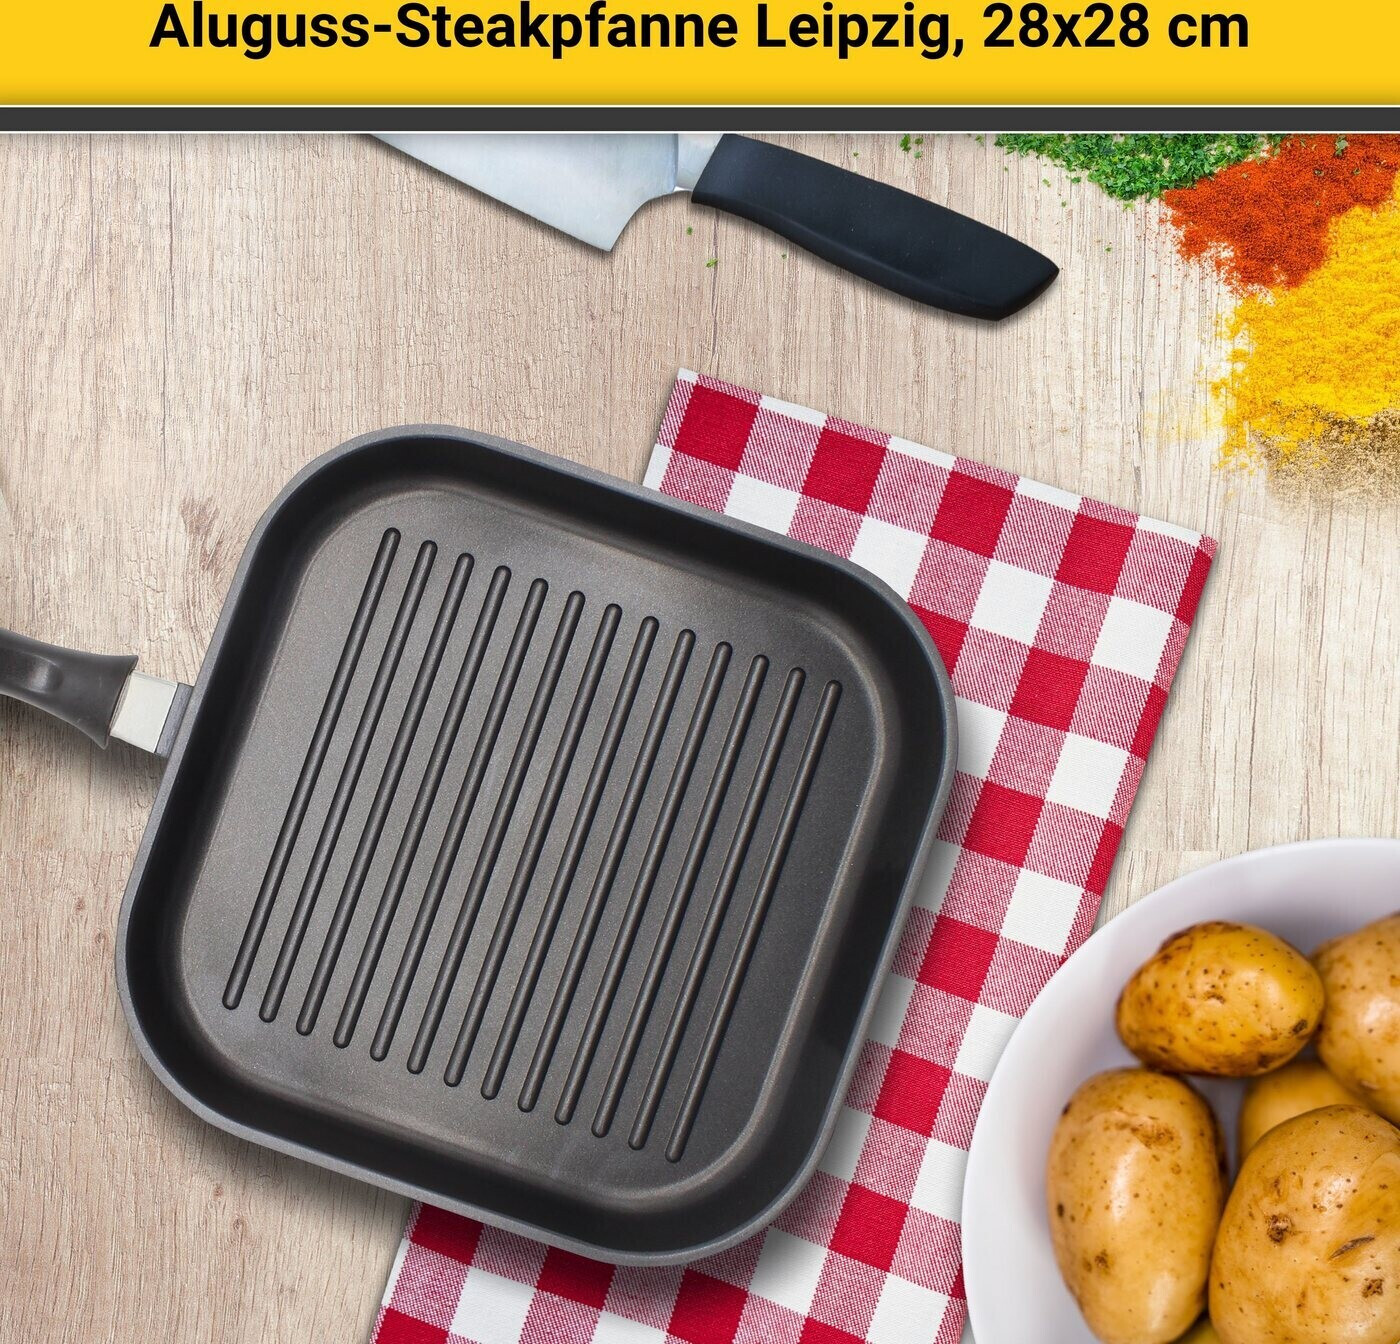 € Krüger Preisvergleich x cm ab Steak-Pfanne 28 28 Leipzig | bei 21,80